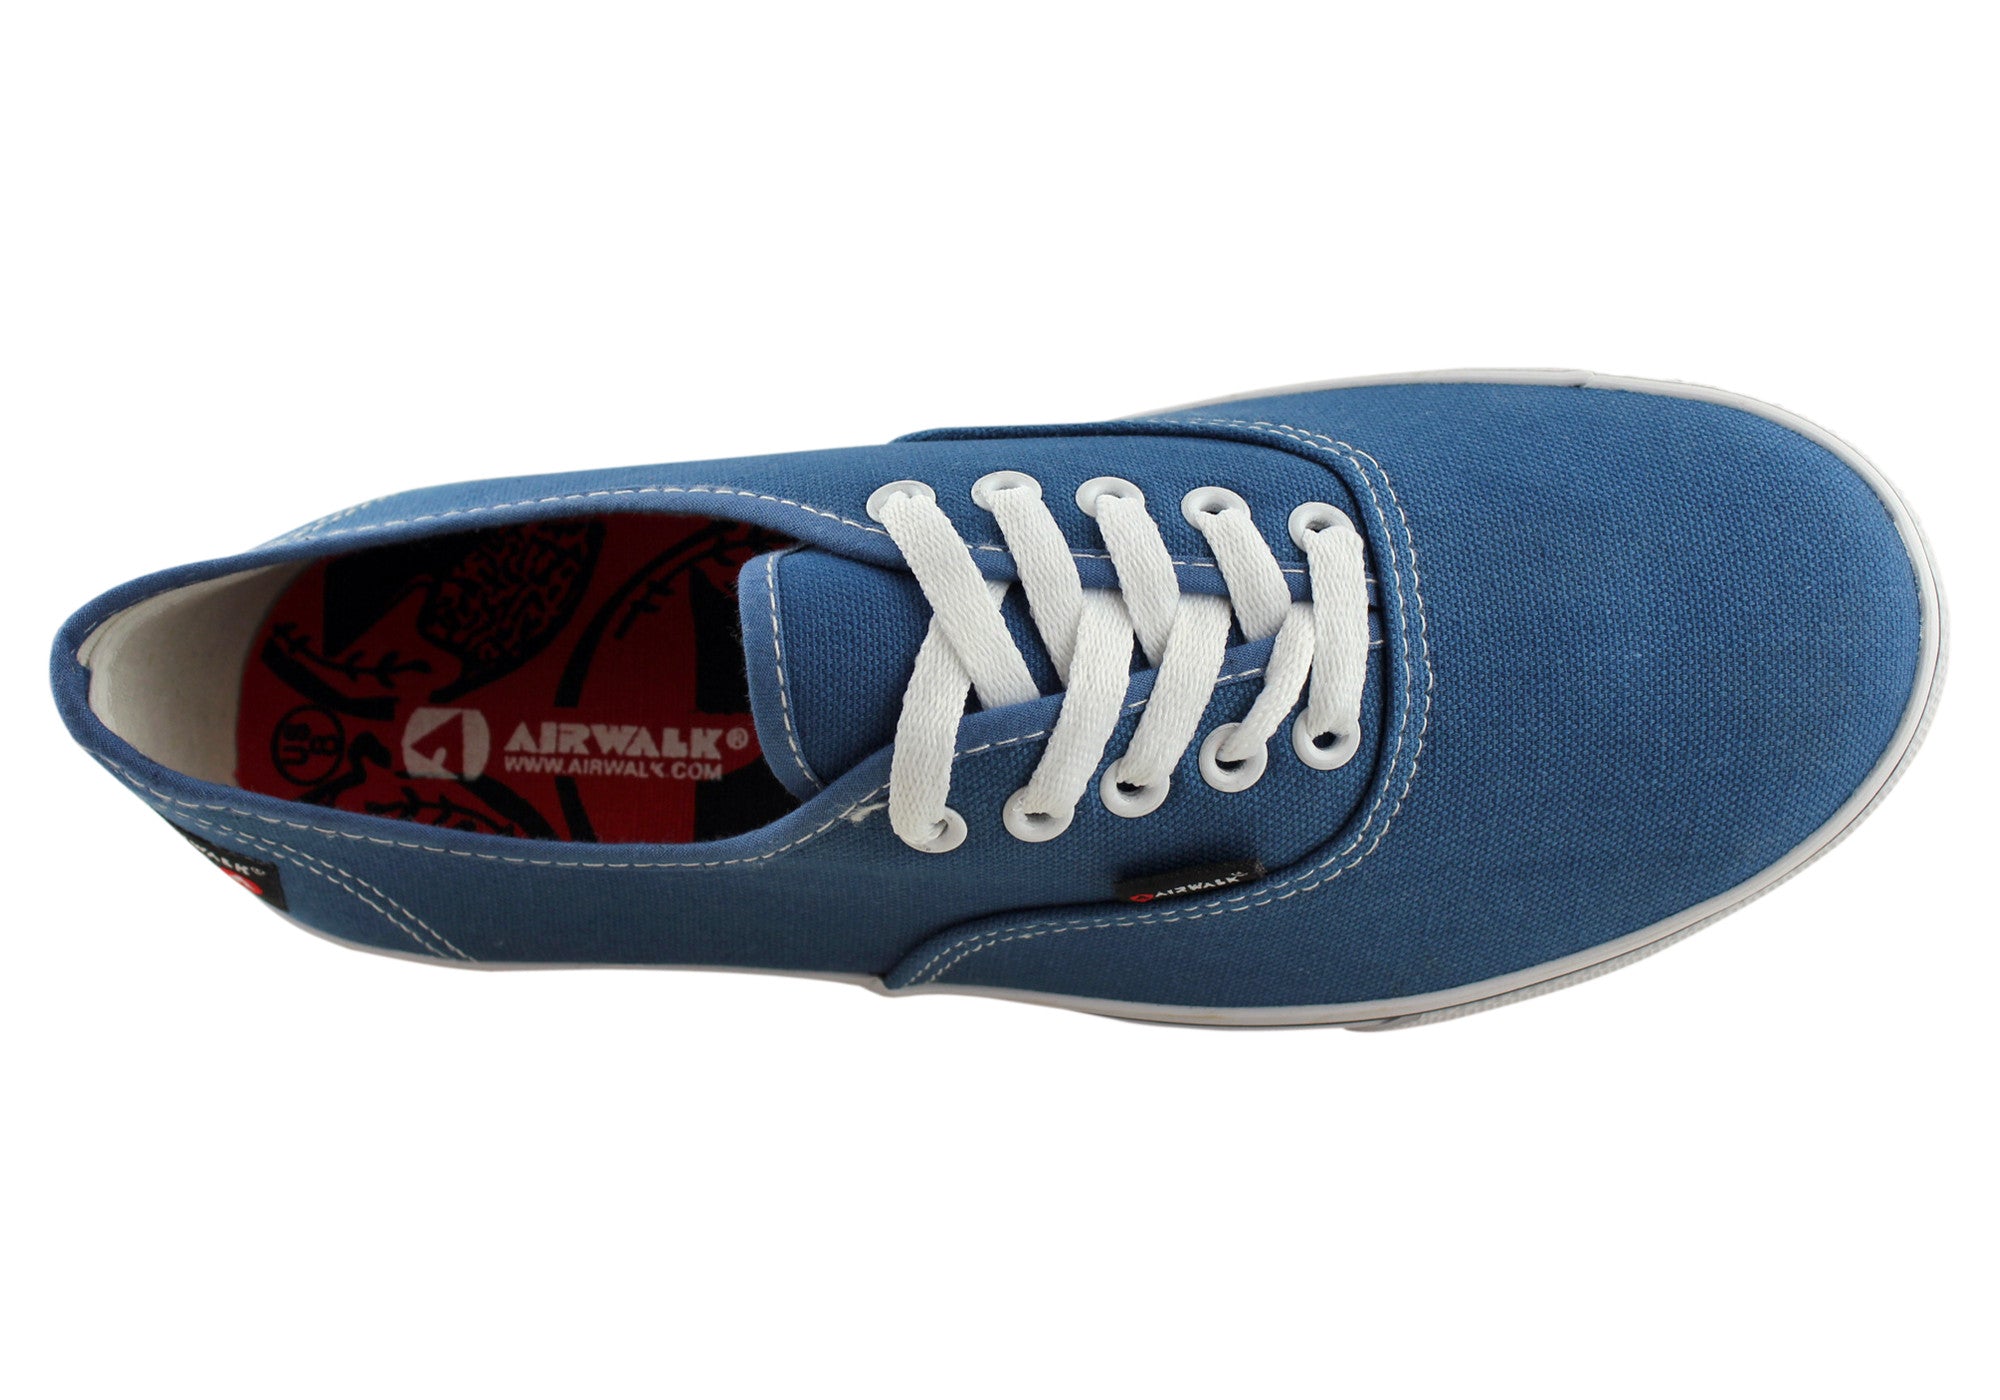 airwalk shoes blue